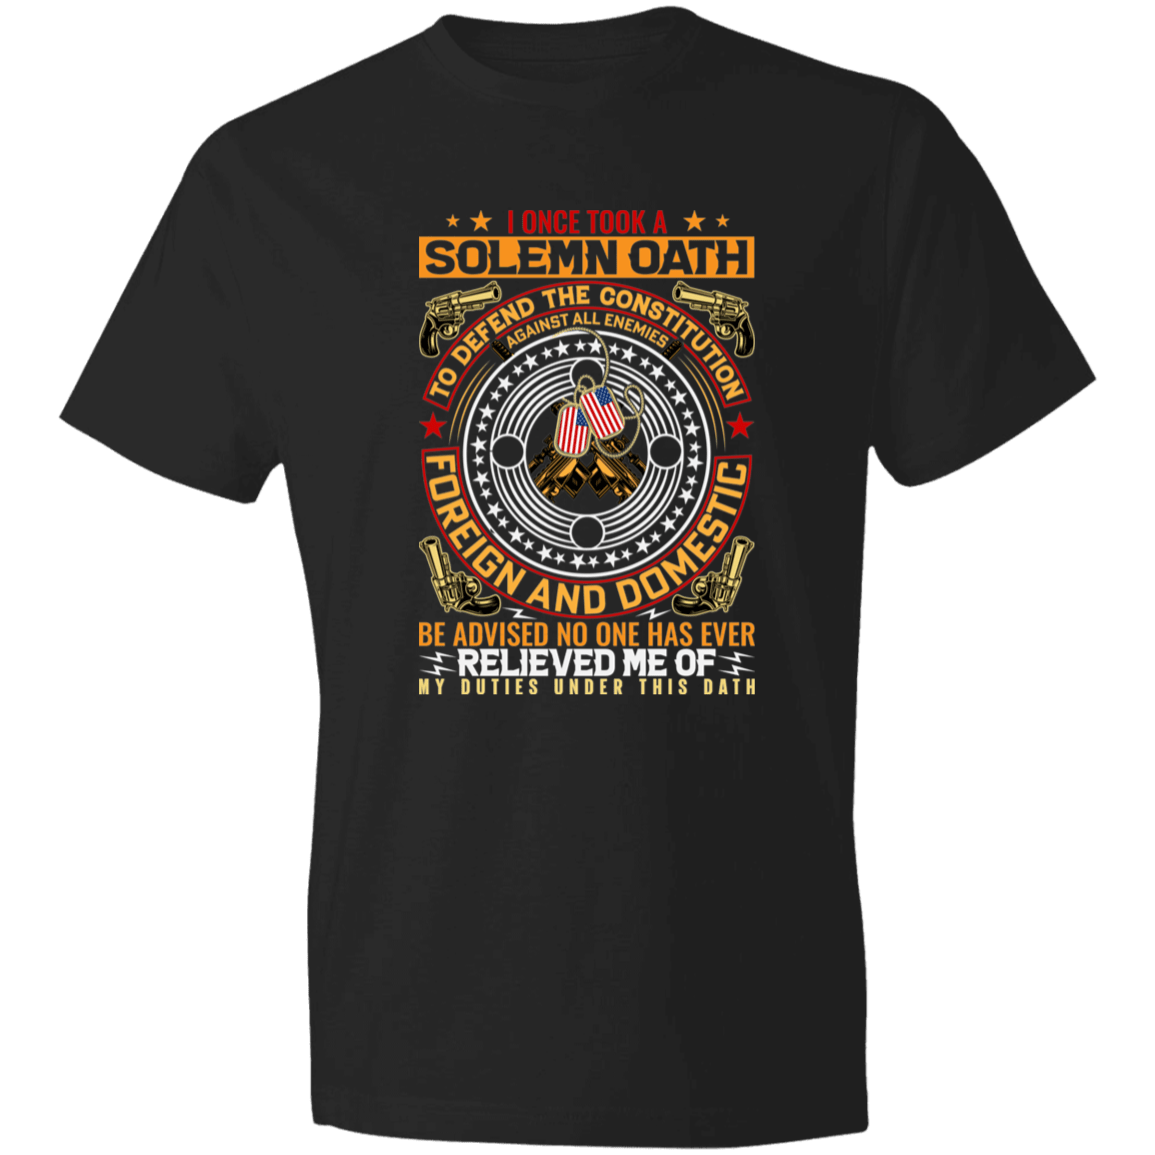 solemn Oath Men's Lightweight T-Shirt 4.5 oz